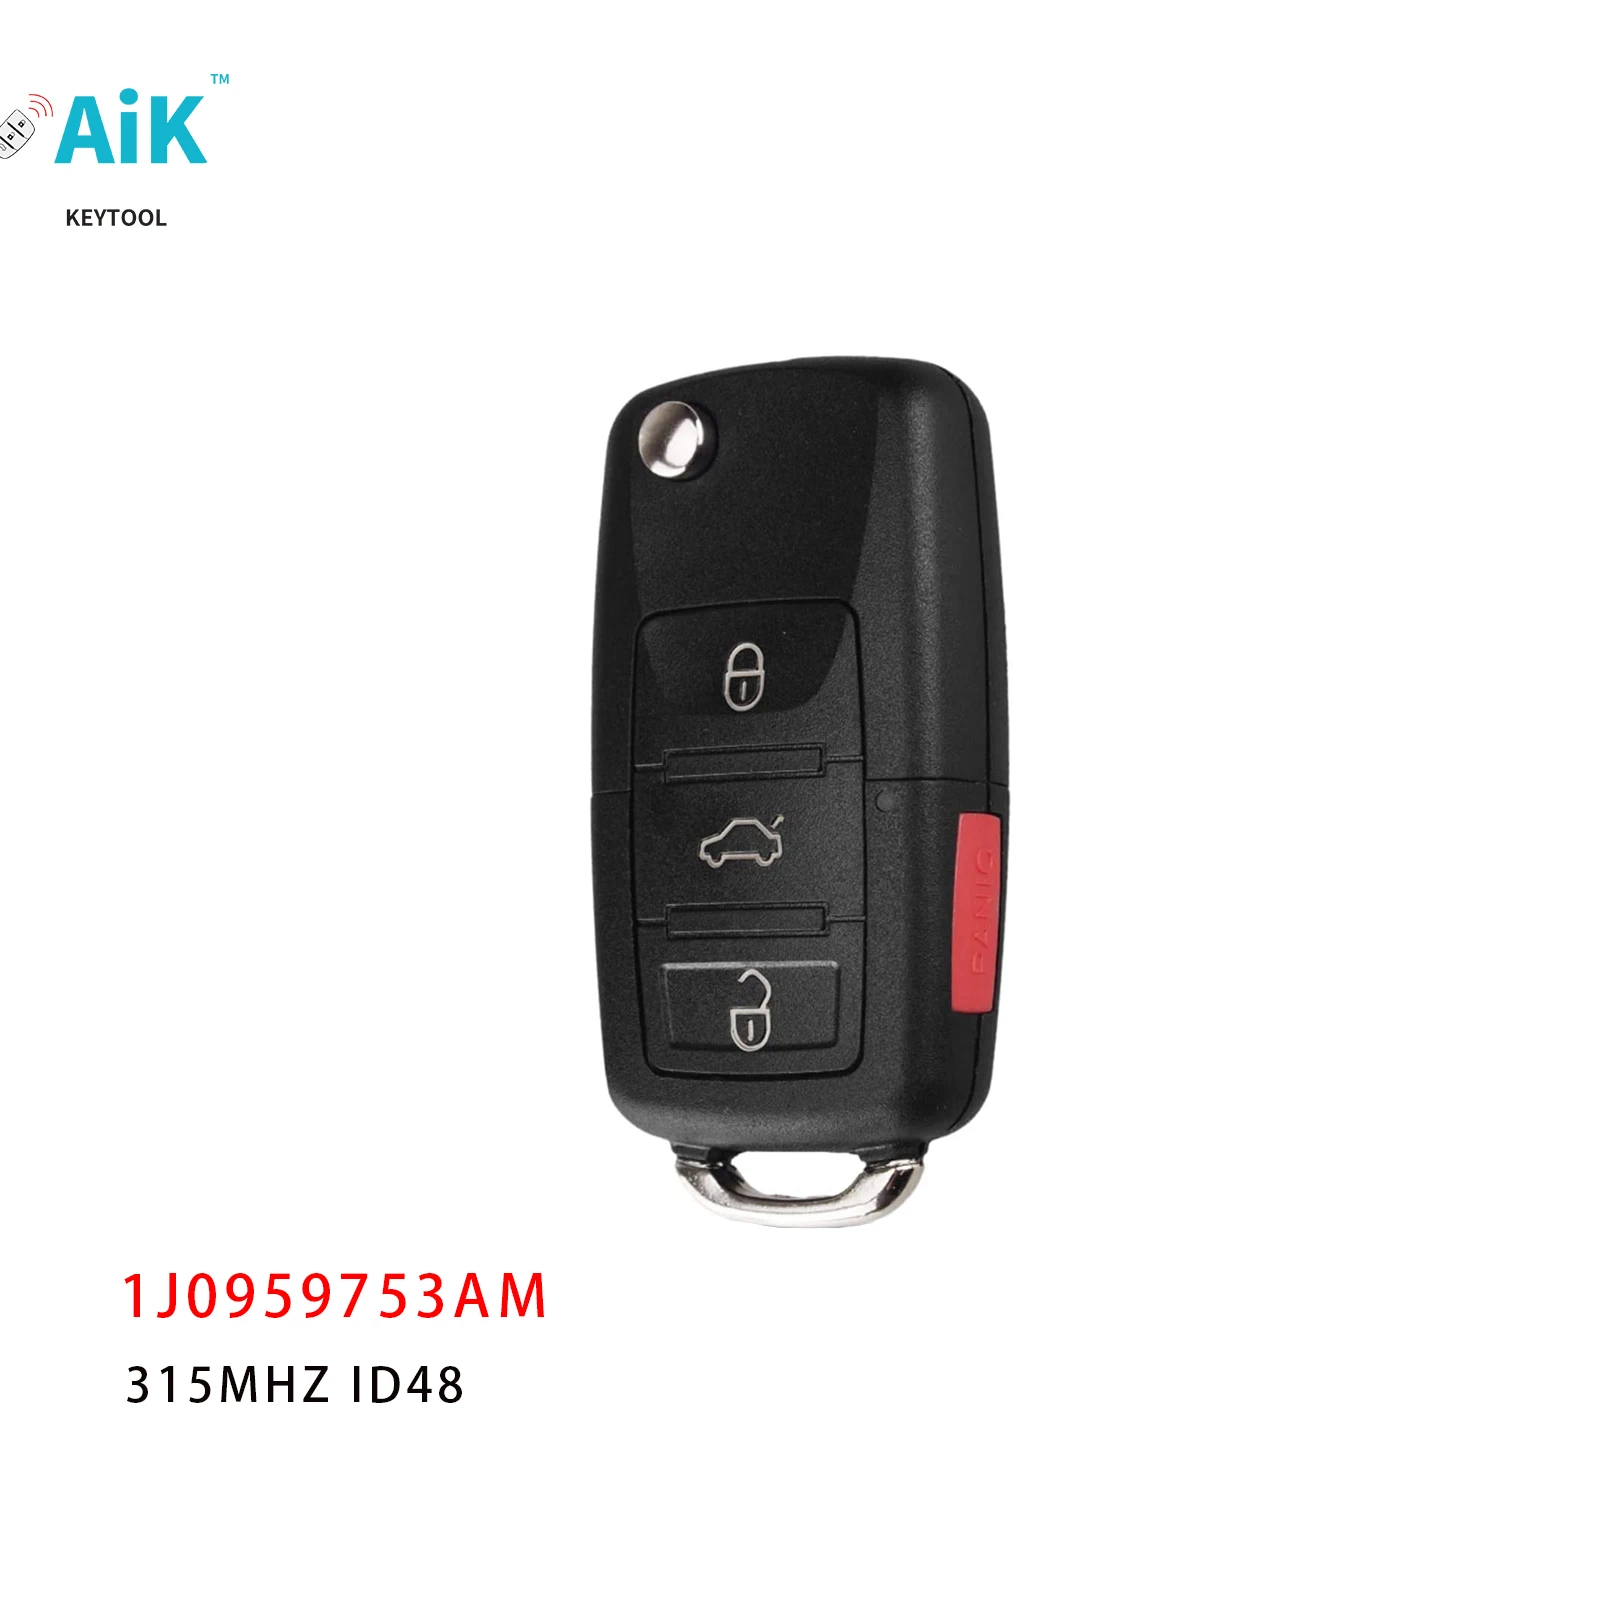 

1J0959753AM Remote Car Key Fob for Volkswagen VW Beetle Golf Passat Jetta 315Mhz ID48 5FA008399-30 2000-2006 Car Accessories